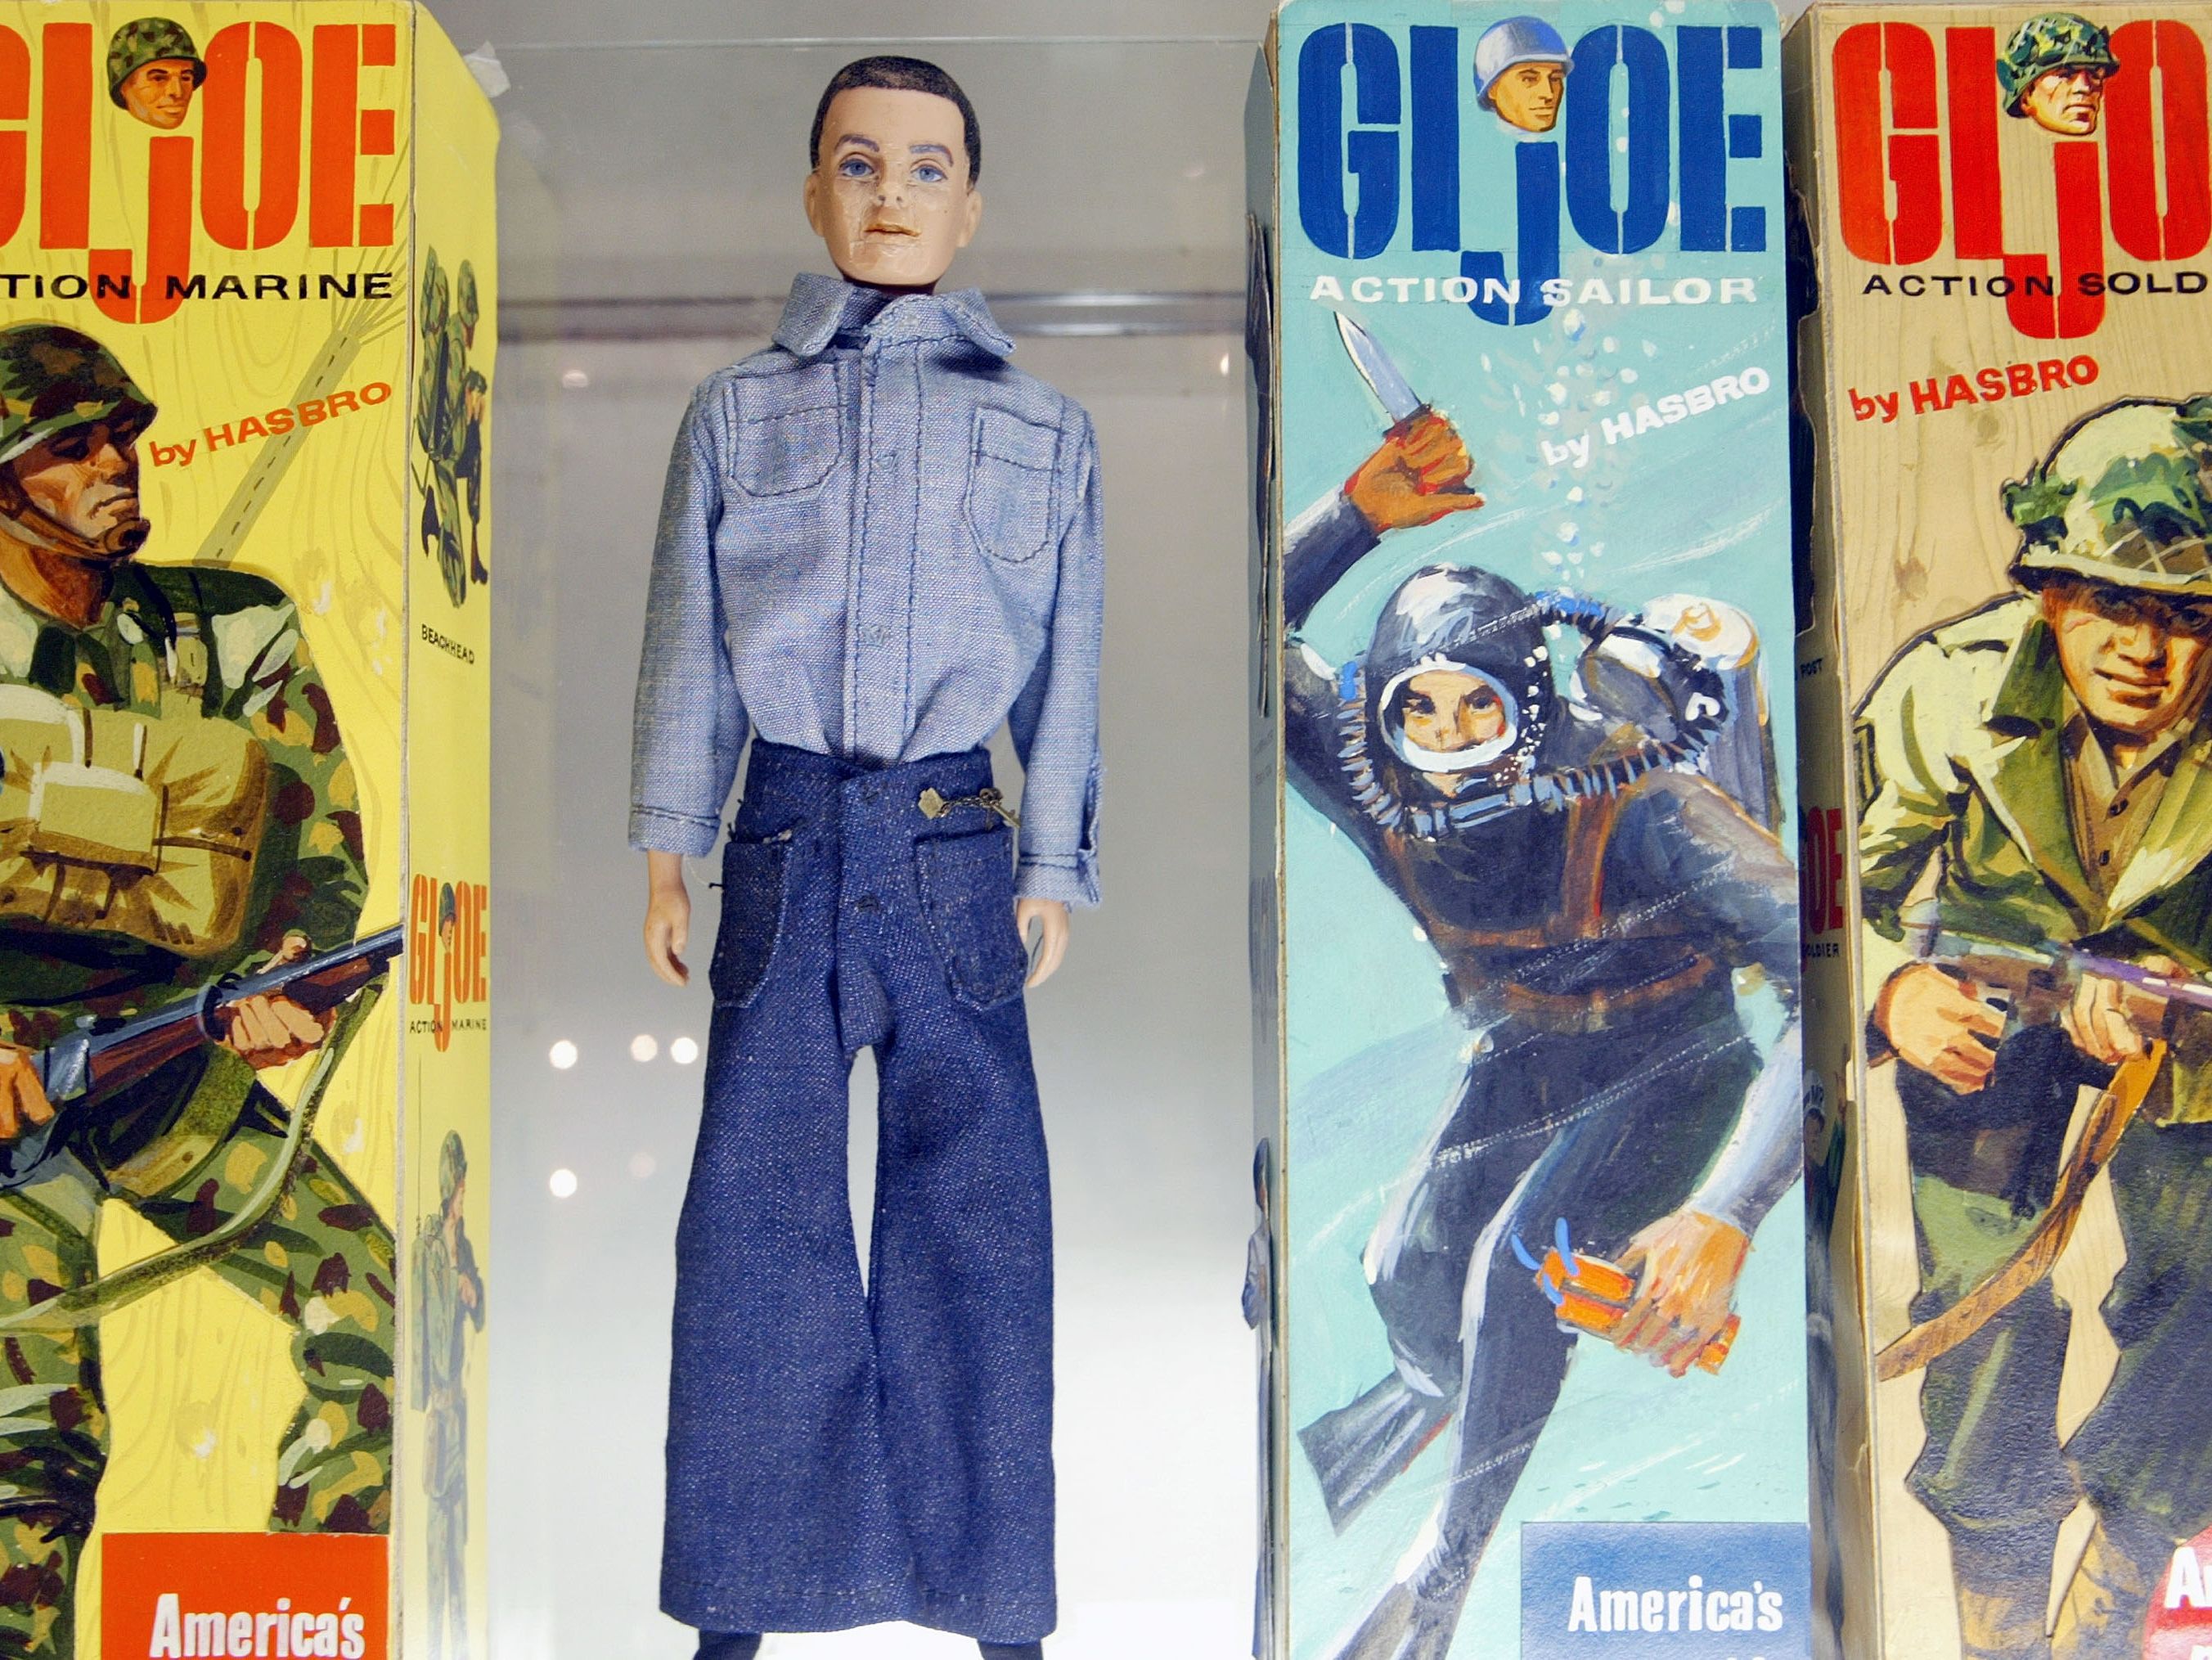 1980s gi joe figures